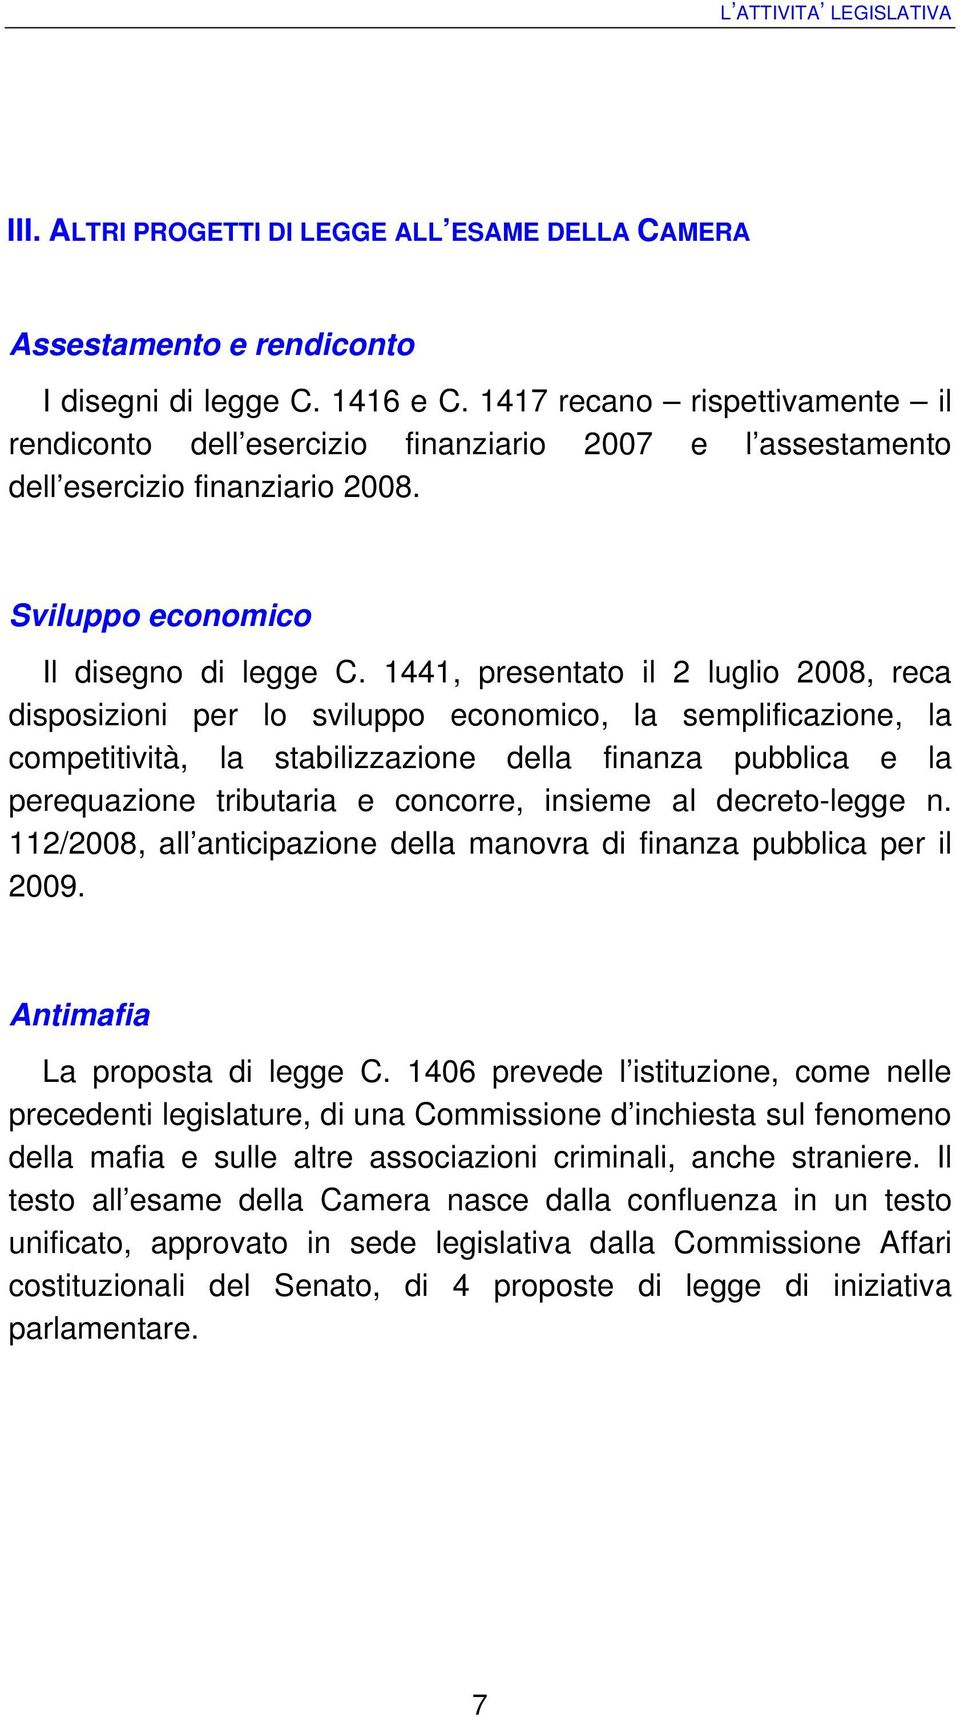 1441, presentato il 2 luglio 2008, reca disposizioni per lo sviluppo economico, la semplificazione, la competitività, la stabilizzazione della finanza pubblica e la perequazione tributaria e